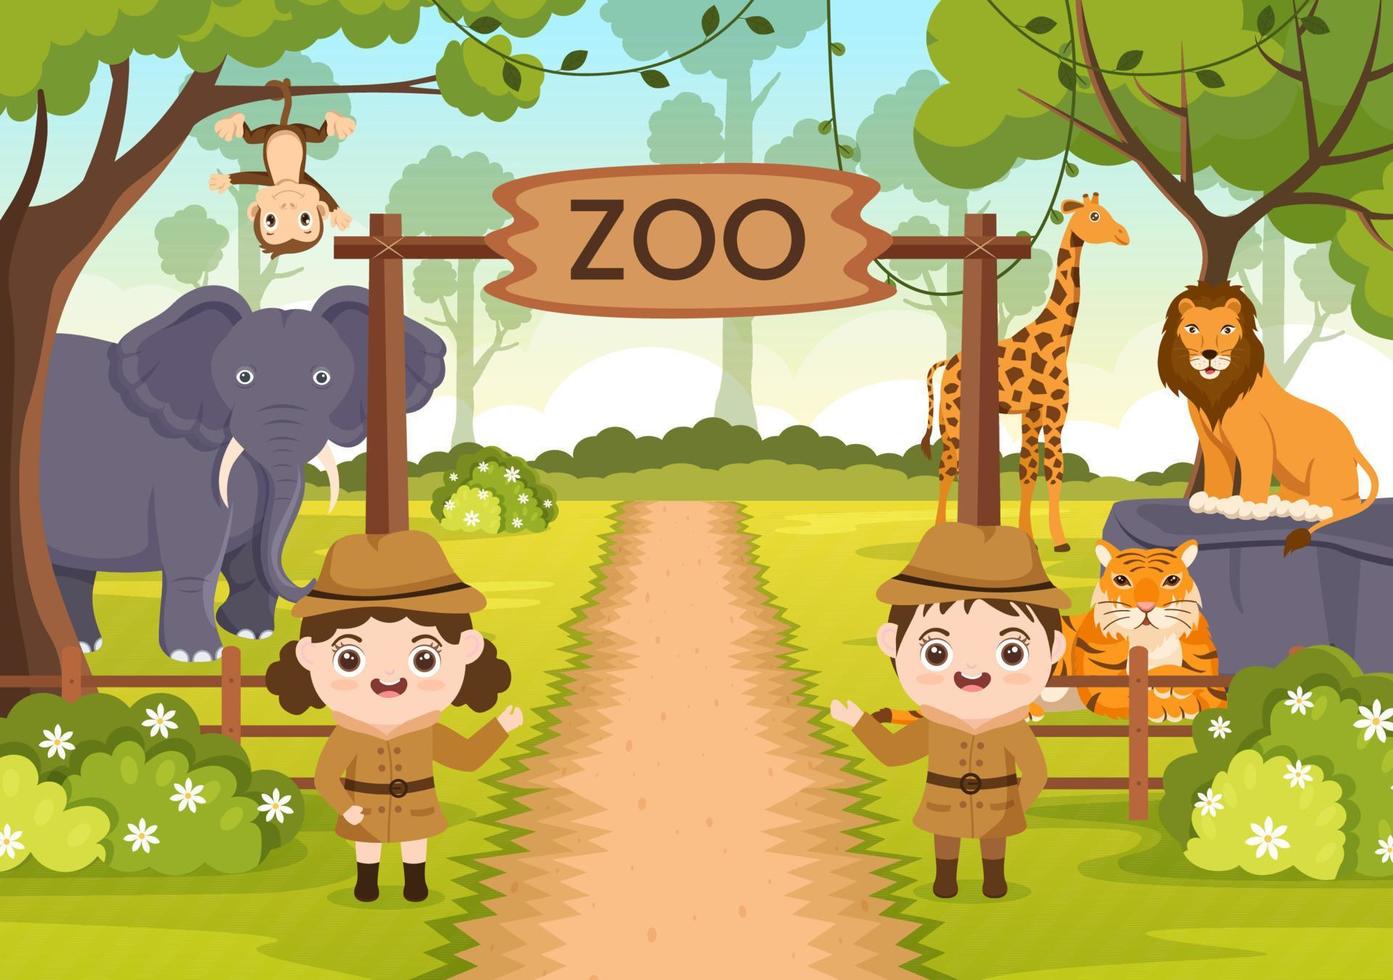 illustrazione del fumetto dello zoo con animali da safari elefanti, giraffe, leoni, scimmie, panda, zebre e visitatori sul territorio sullo sfondo della foresta vettore